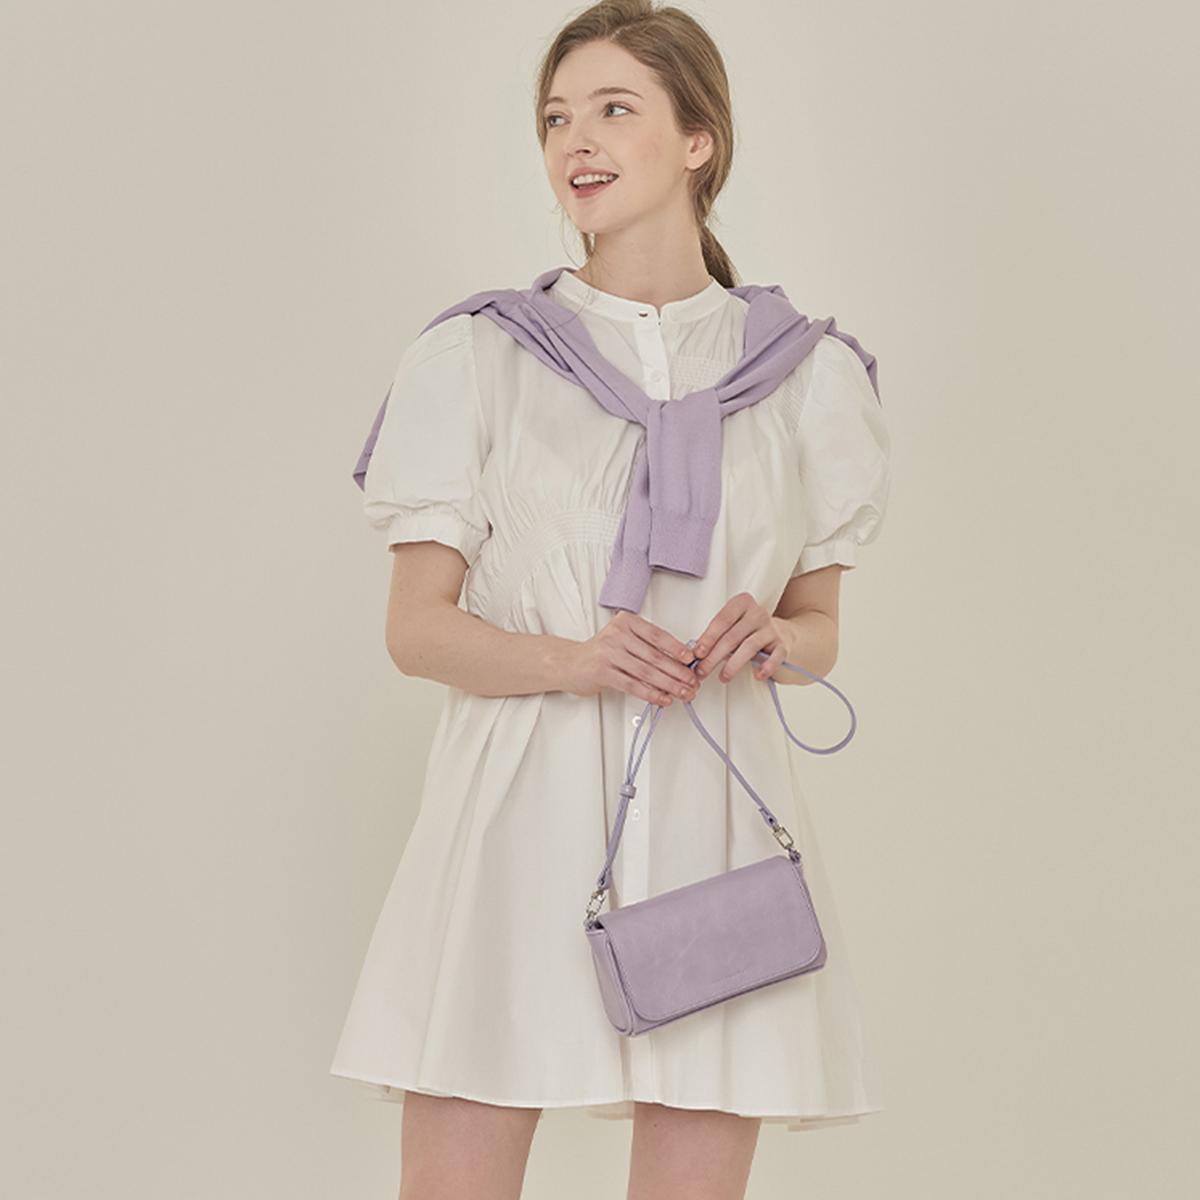 Oval Mini Shoulder/Crossbody Bag (Lilac)